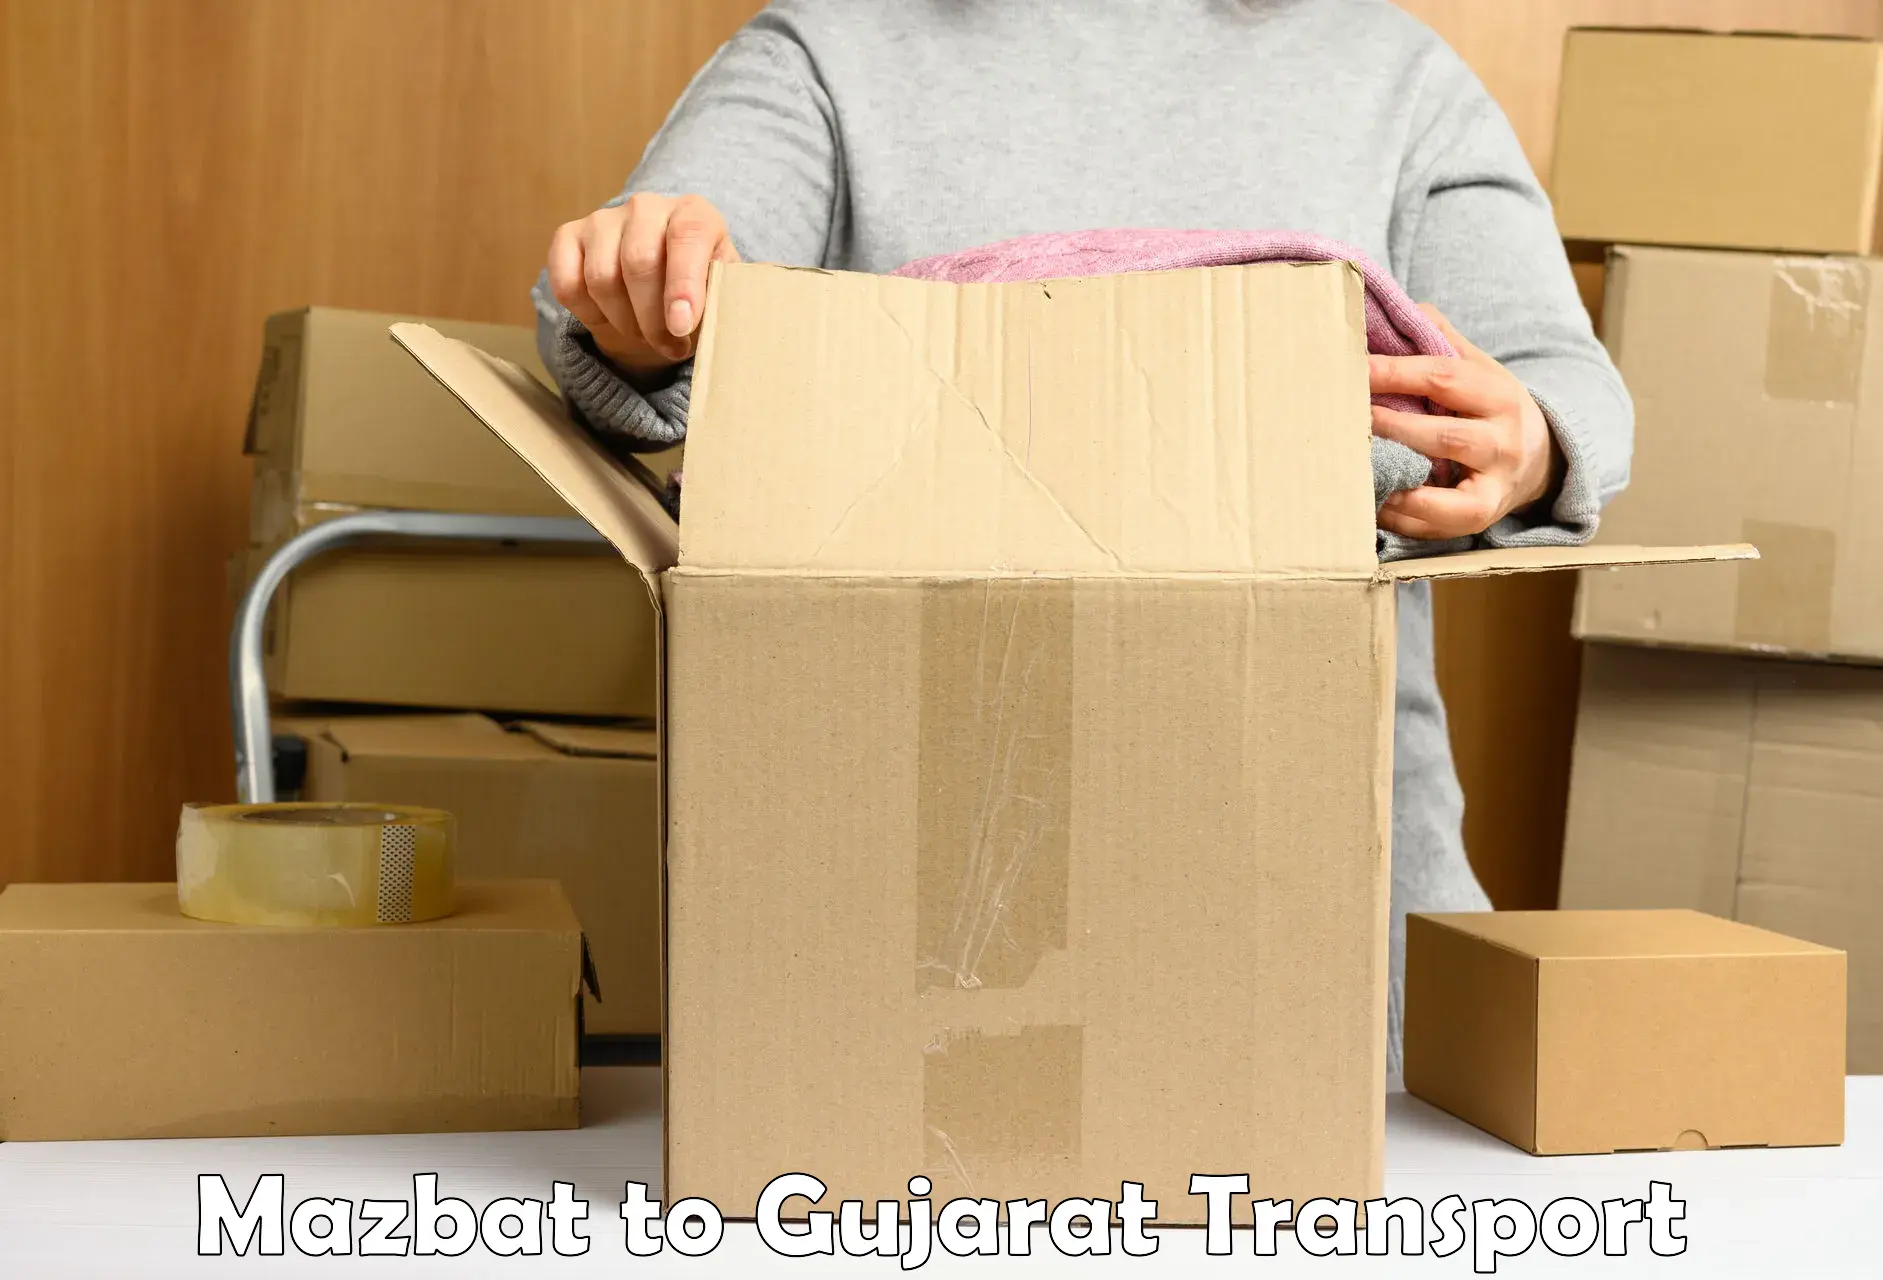 Furniture transport service Mazbat to Bhabhar